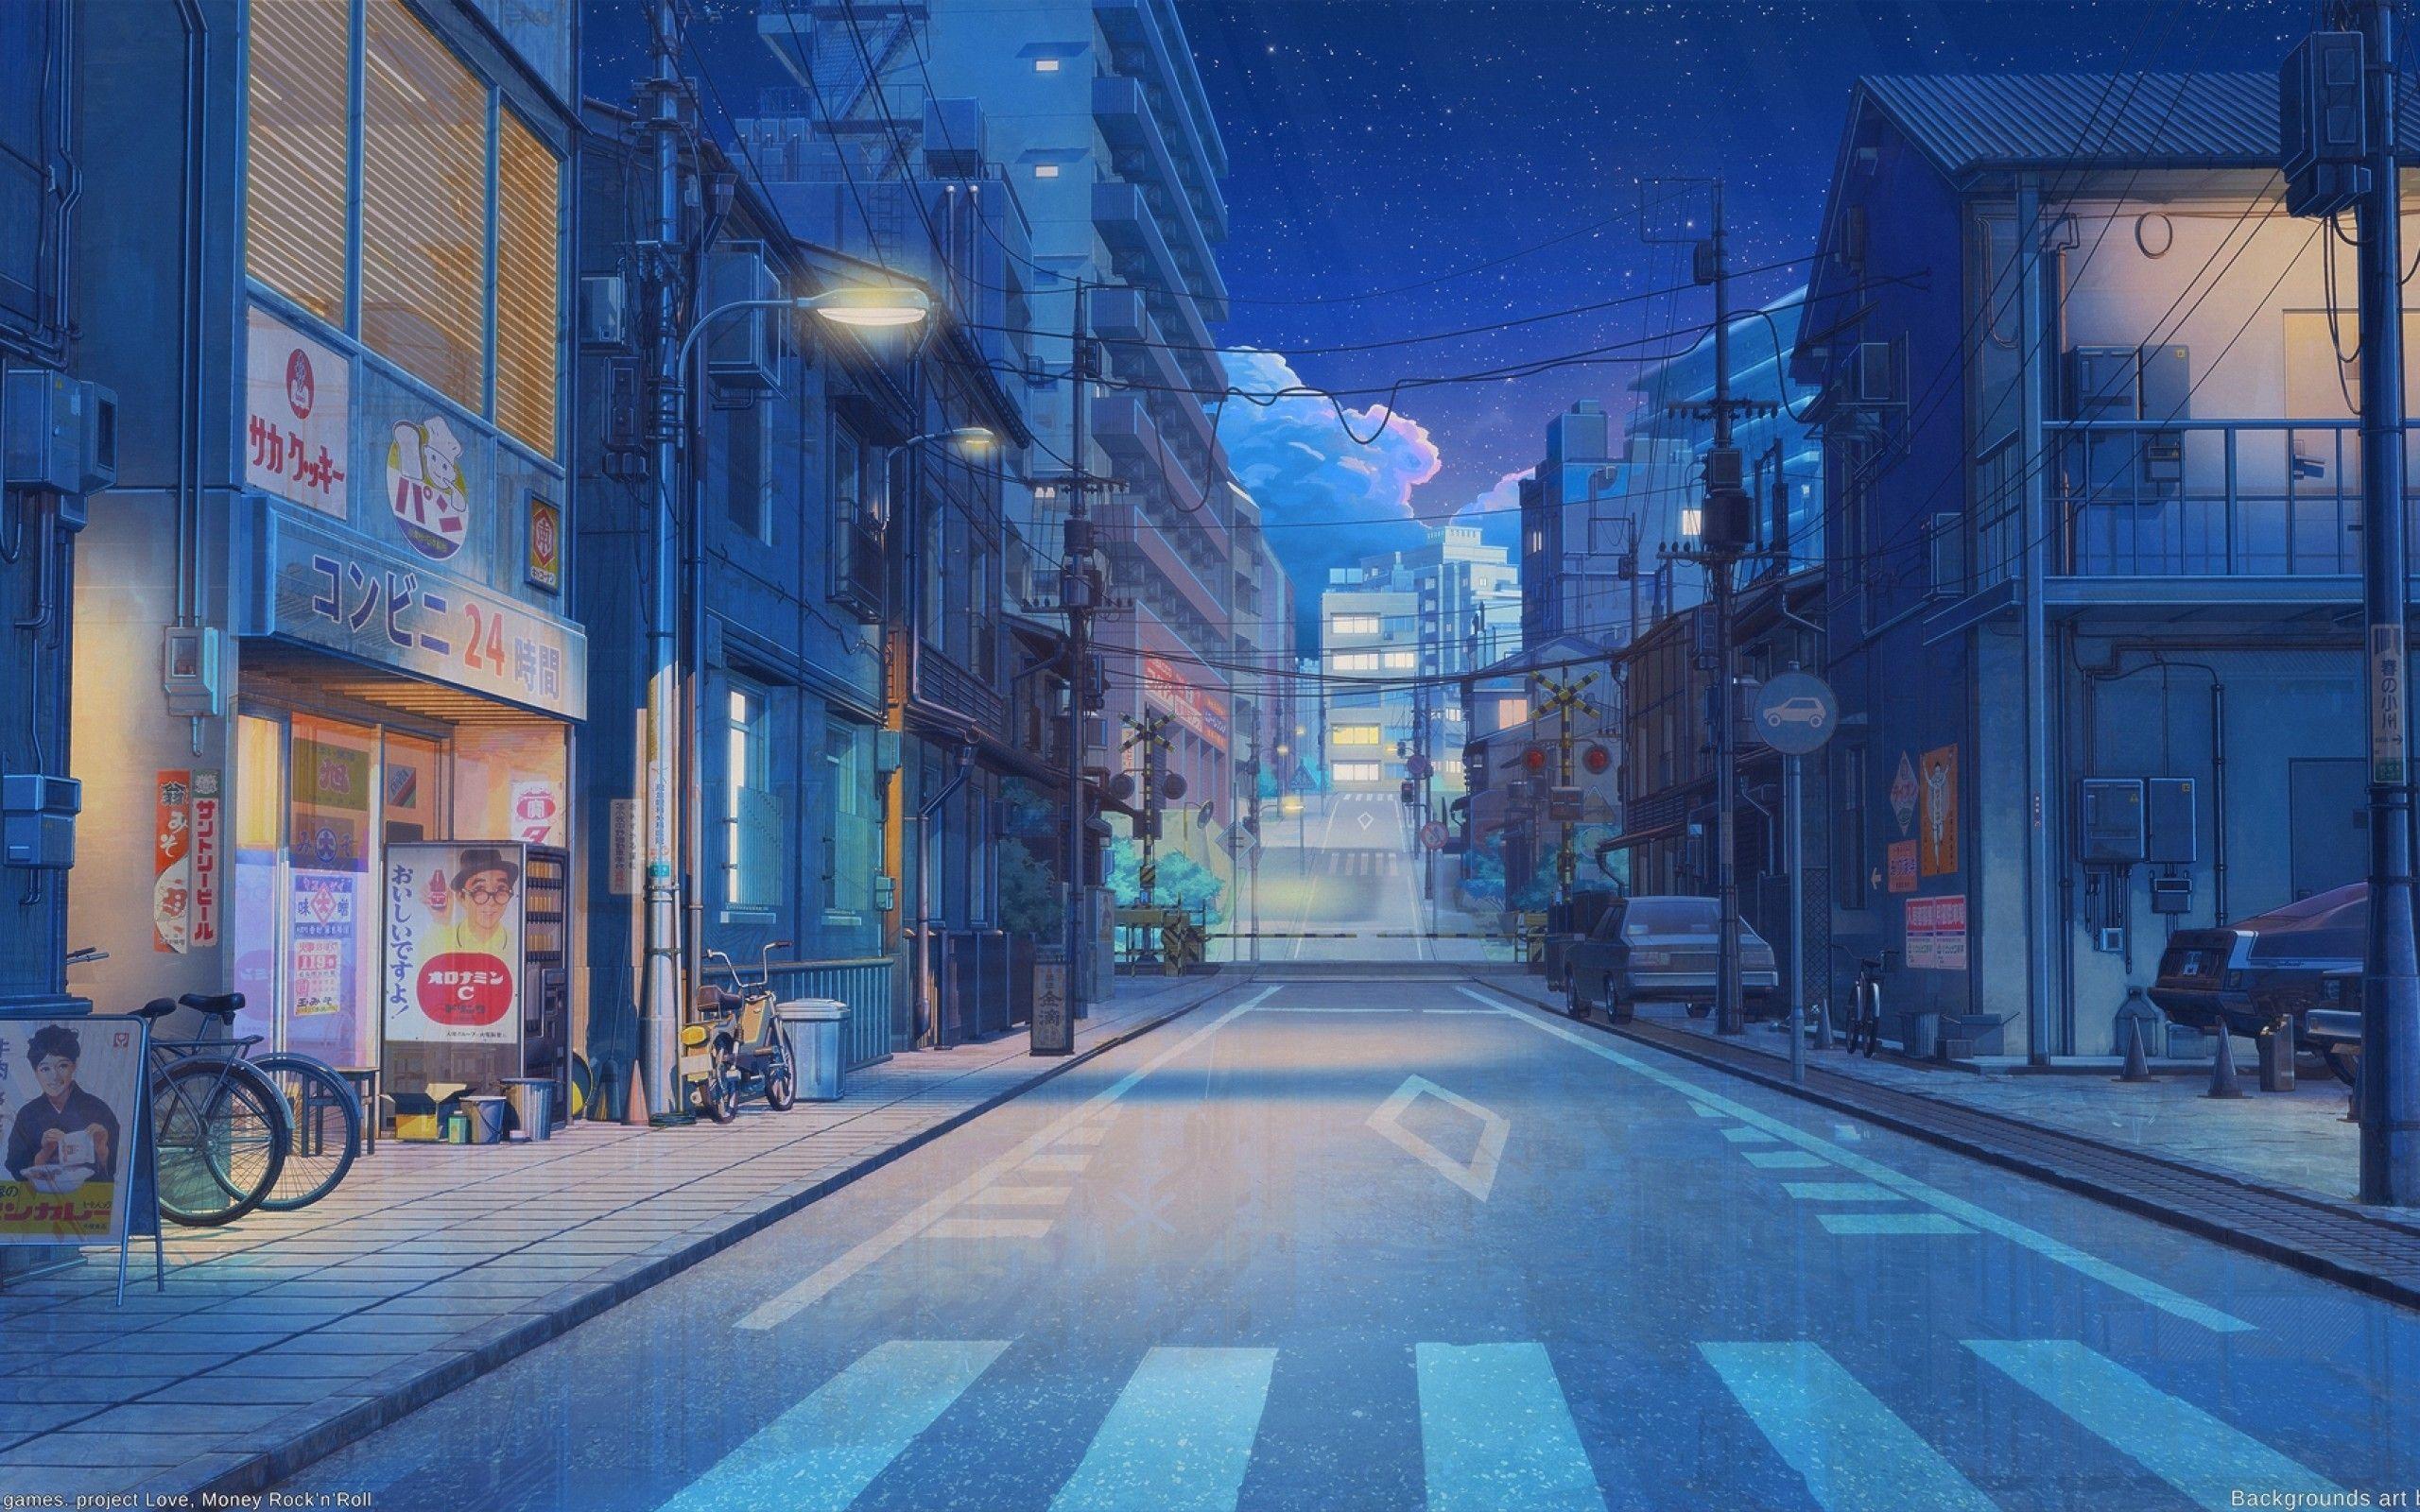 Ảnh nền anime đường phố là món quà tuyệt vời khi bạn muốn thể hiện sự đam mê của mình thông qua thiết bị điện tử của mình. Hãy trang trí máy tính, điện thoại của bạn với những hình ảnh đẹp mắt này. Bạn sẽ cảm thấy rất thư giãn khi dạo qua các con phố mà không cần rời khỏi chỗ ngồi của mình.